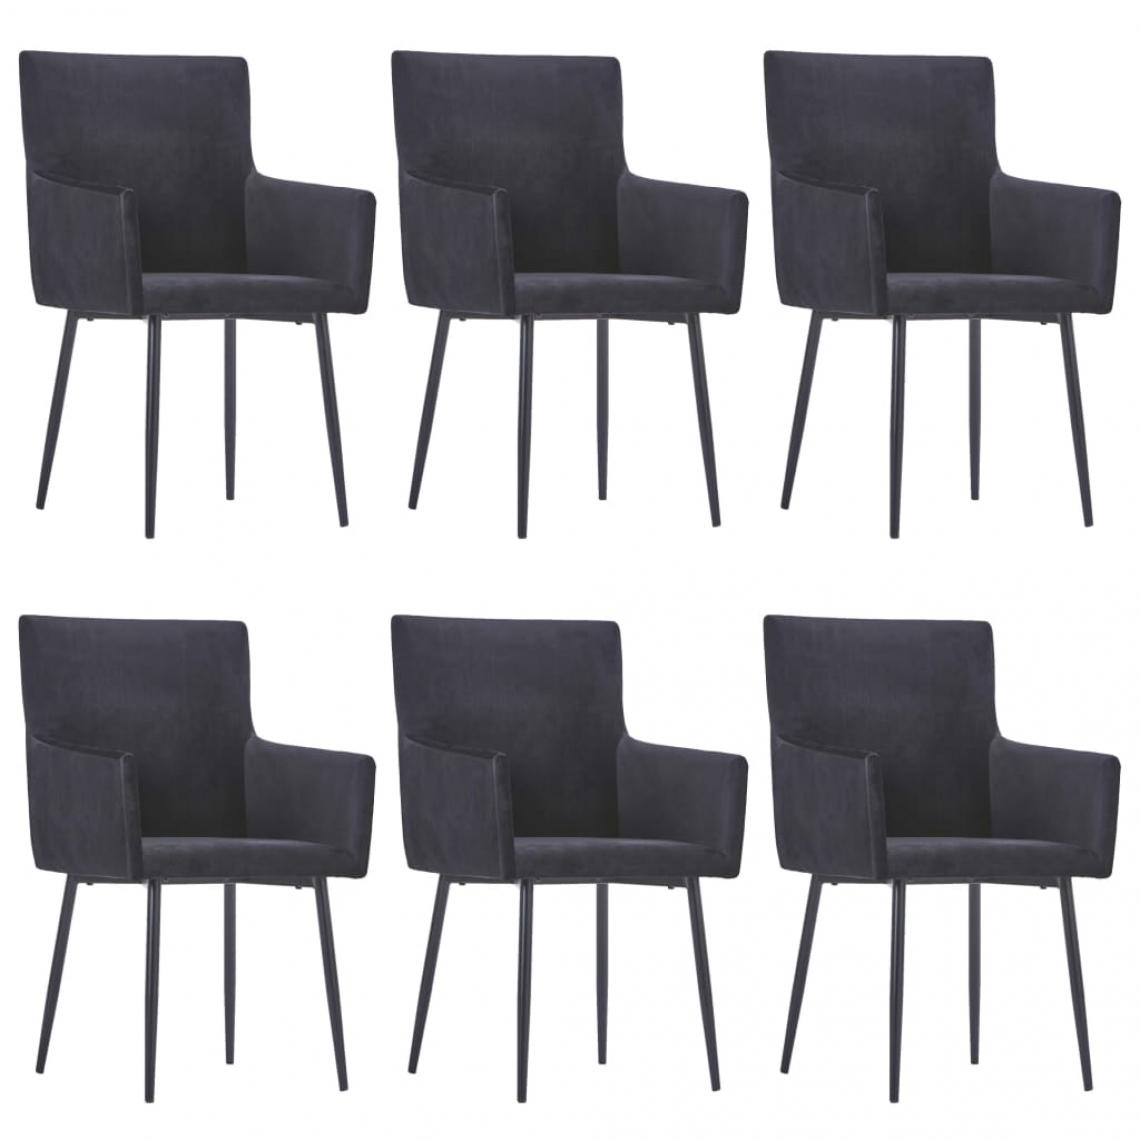 Decoshop26 - Lot de 6 chaises de salle à manger cuisine avec accoudoirs design moderne velours noir CDS022137 - Chaises